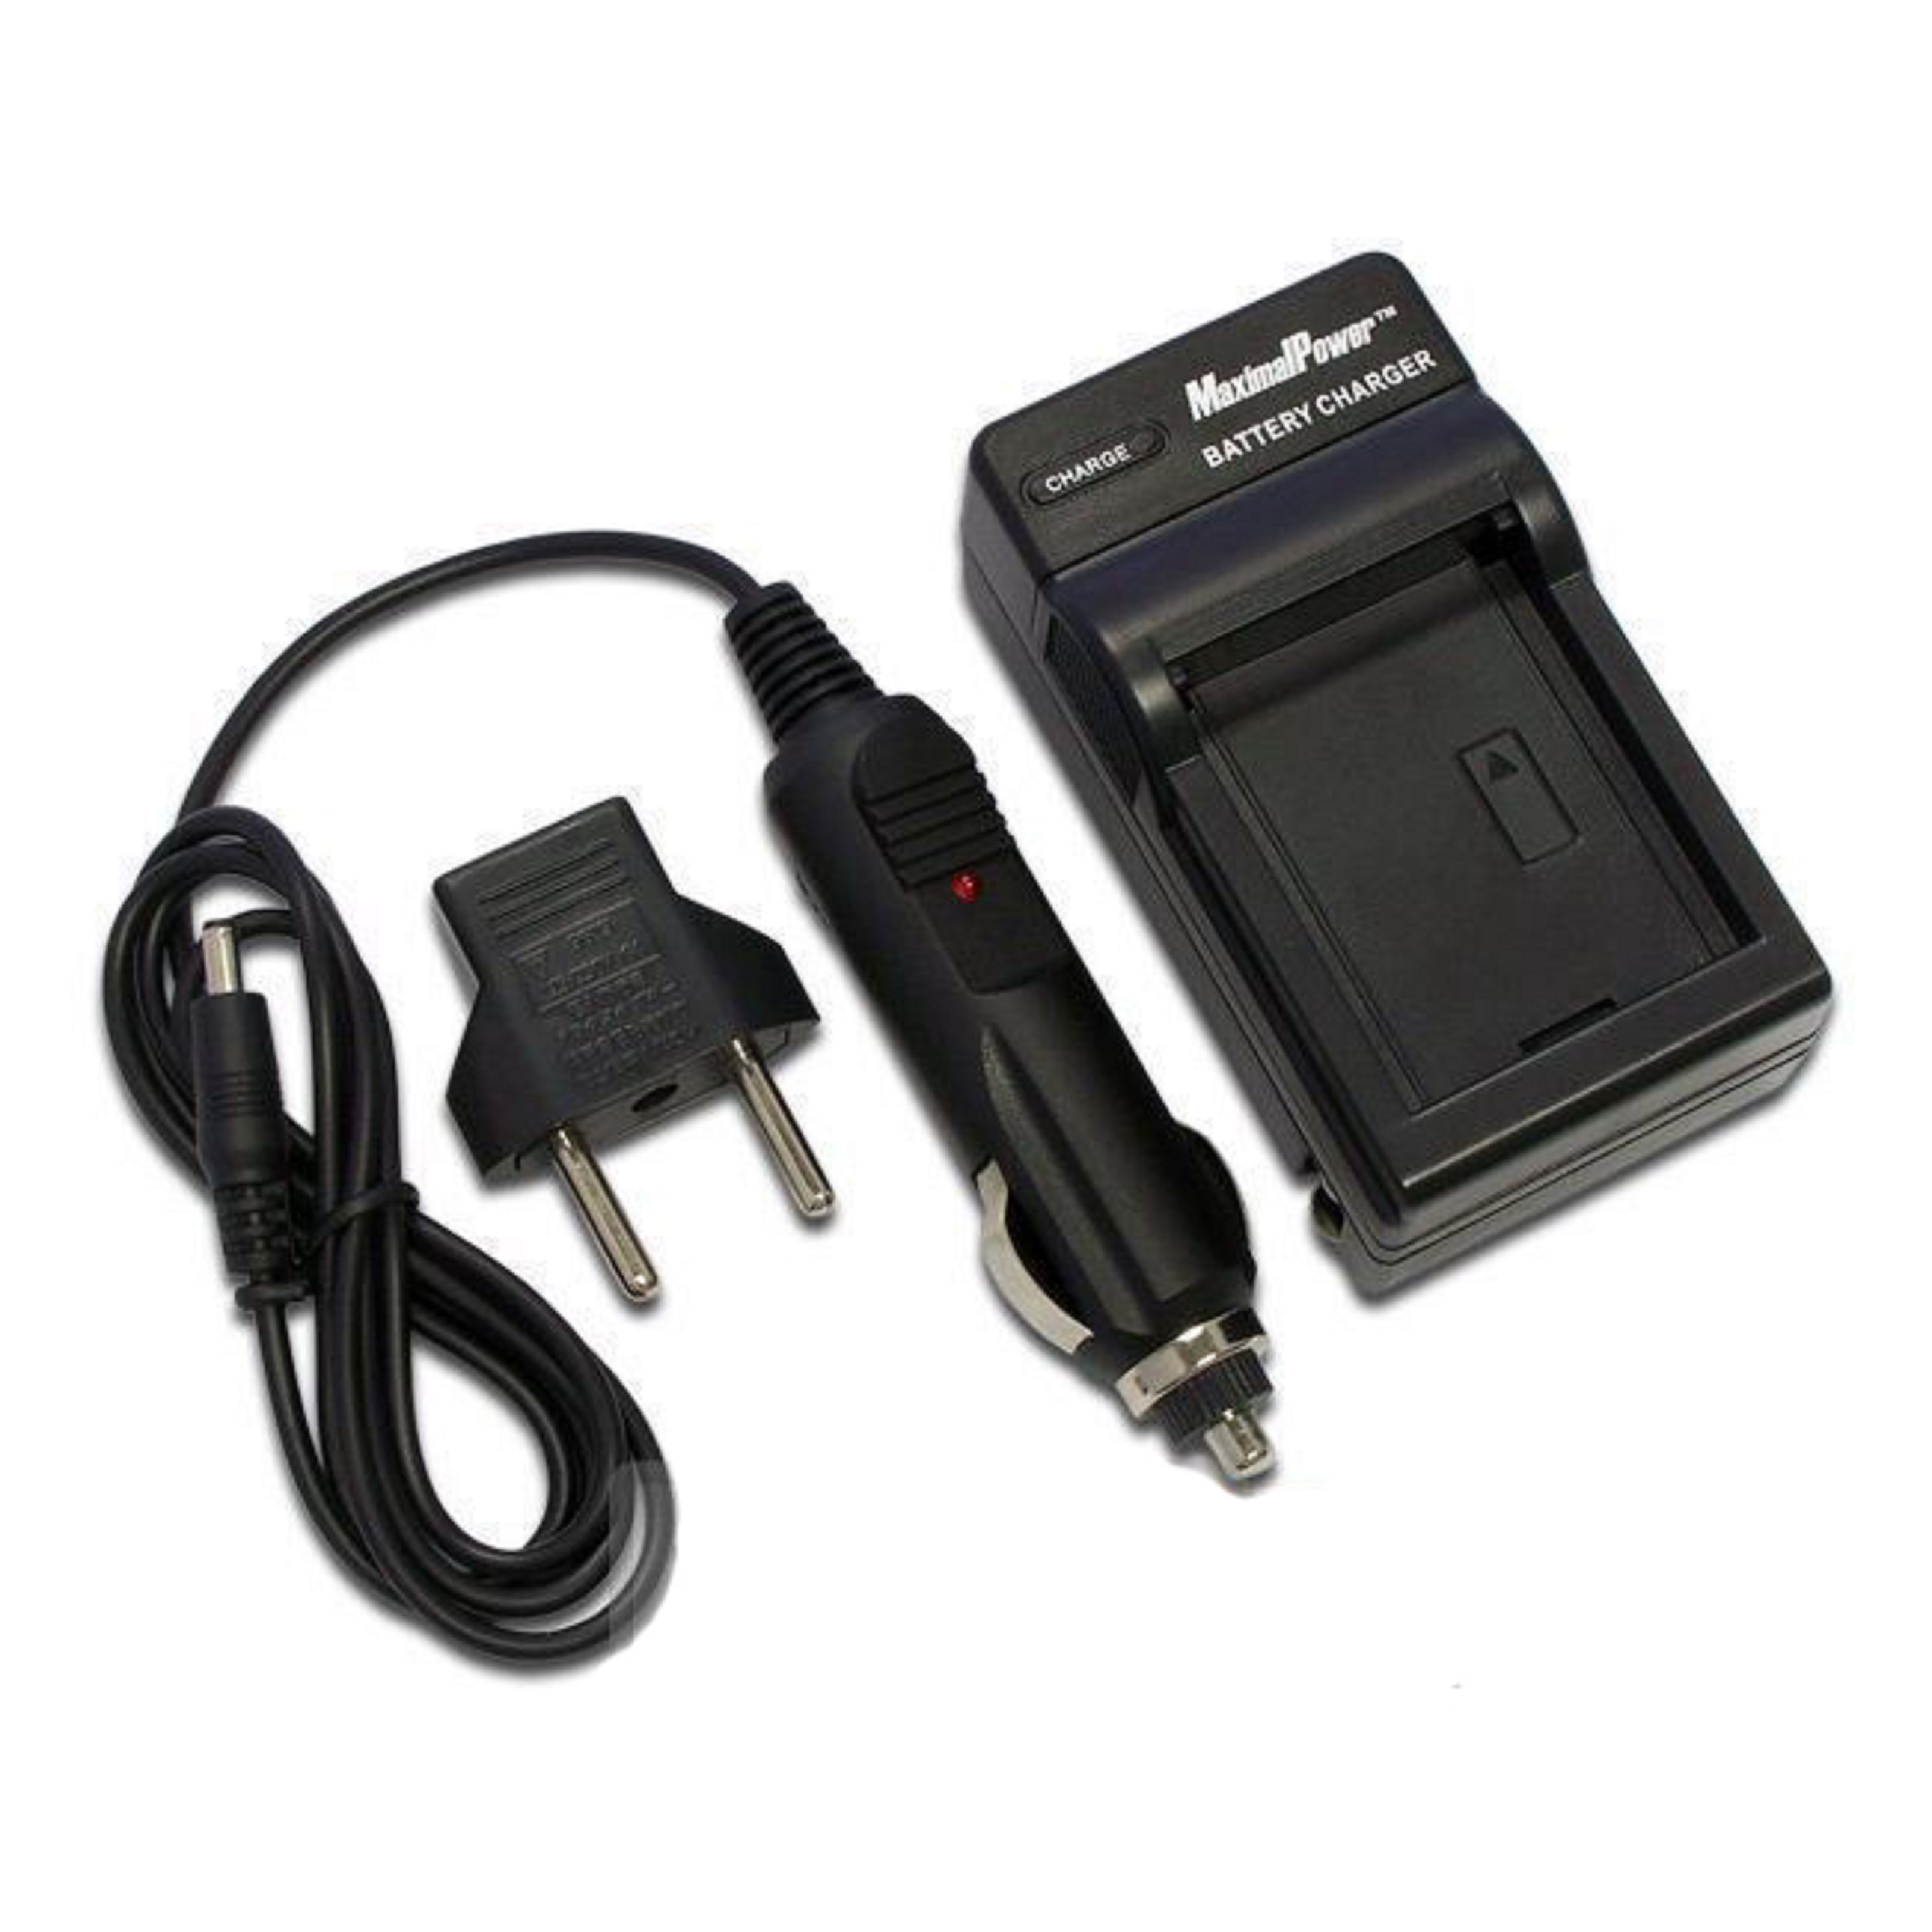 / PEN-F Batería Cargador doble Mark I, II E-M5 contiene cable micro USB USB para BLN-1 BLN1 / Olympus PEN E-P5 / OM-D E-M1 